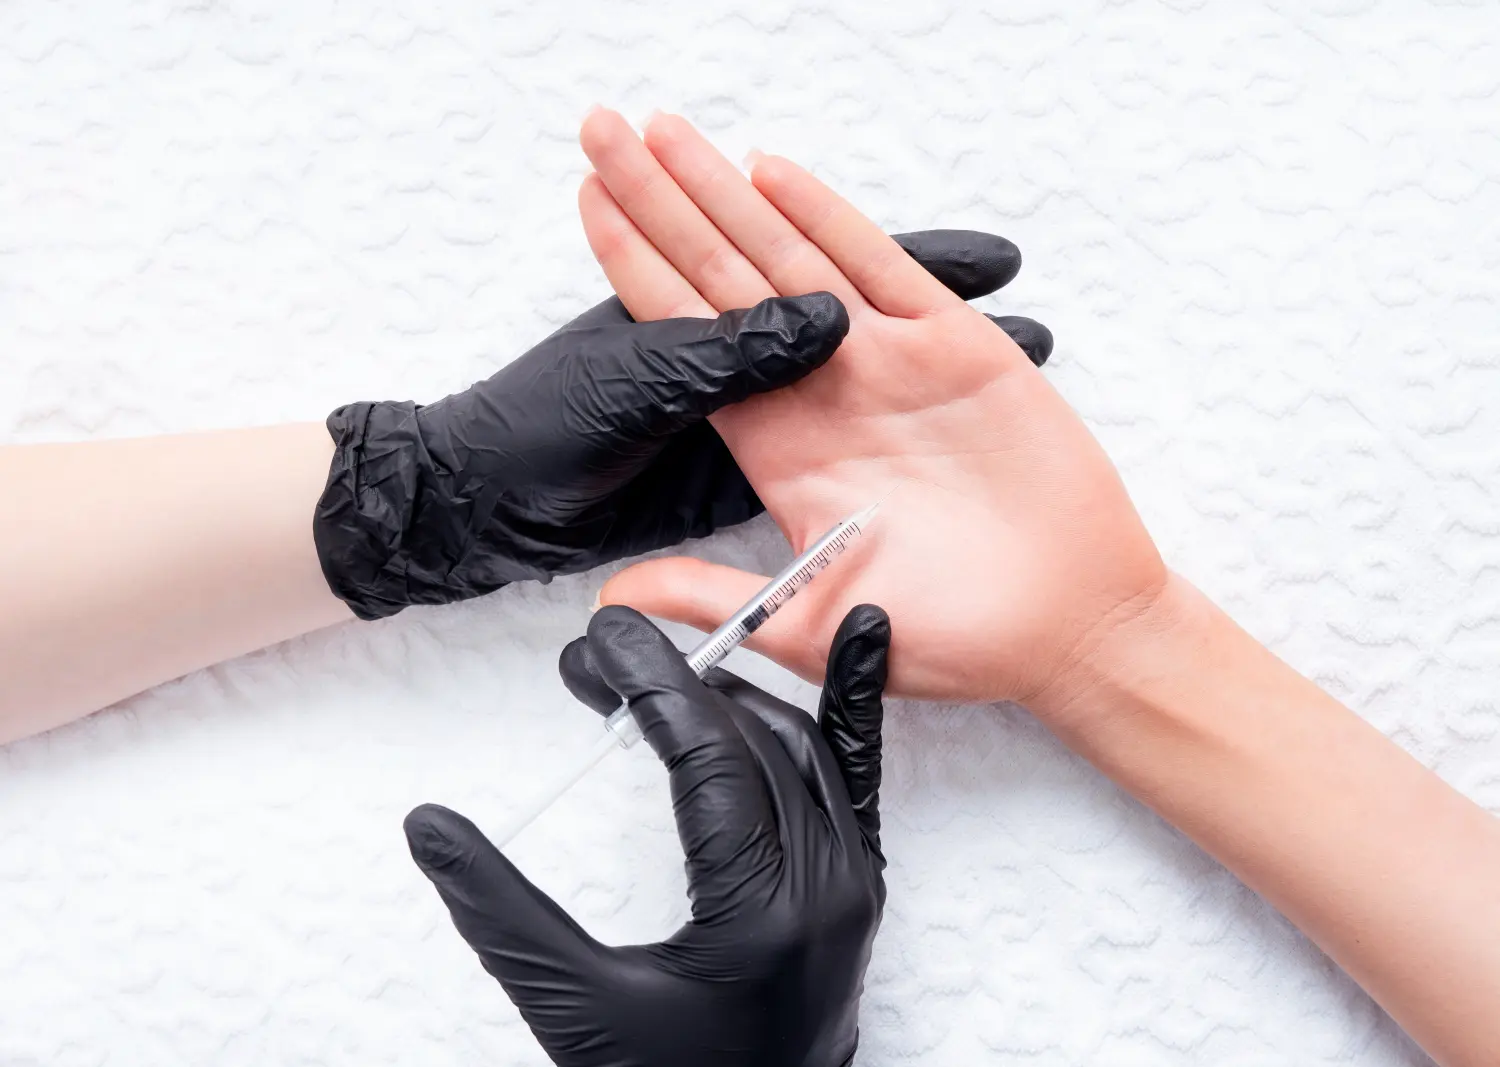 Behandlung von Palm-Hyperhidrose. Injektion eines Botulinumtoxin-haltigen Präparats in die Handfläche zur Behandlung von Schwitzen.